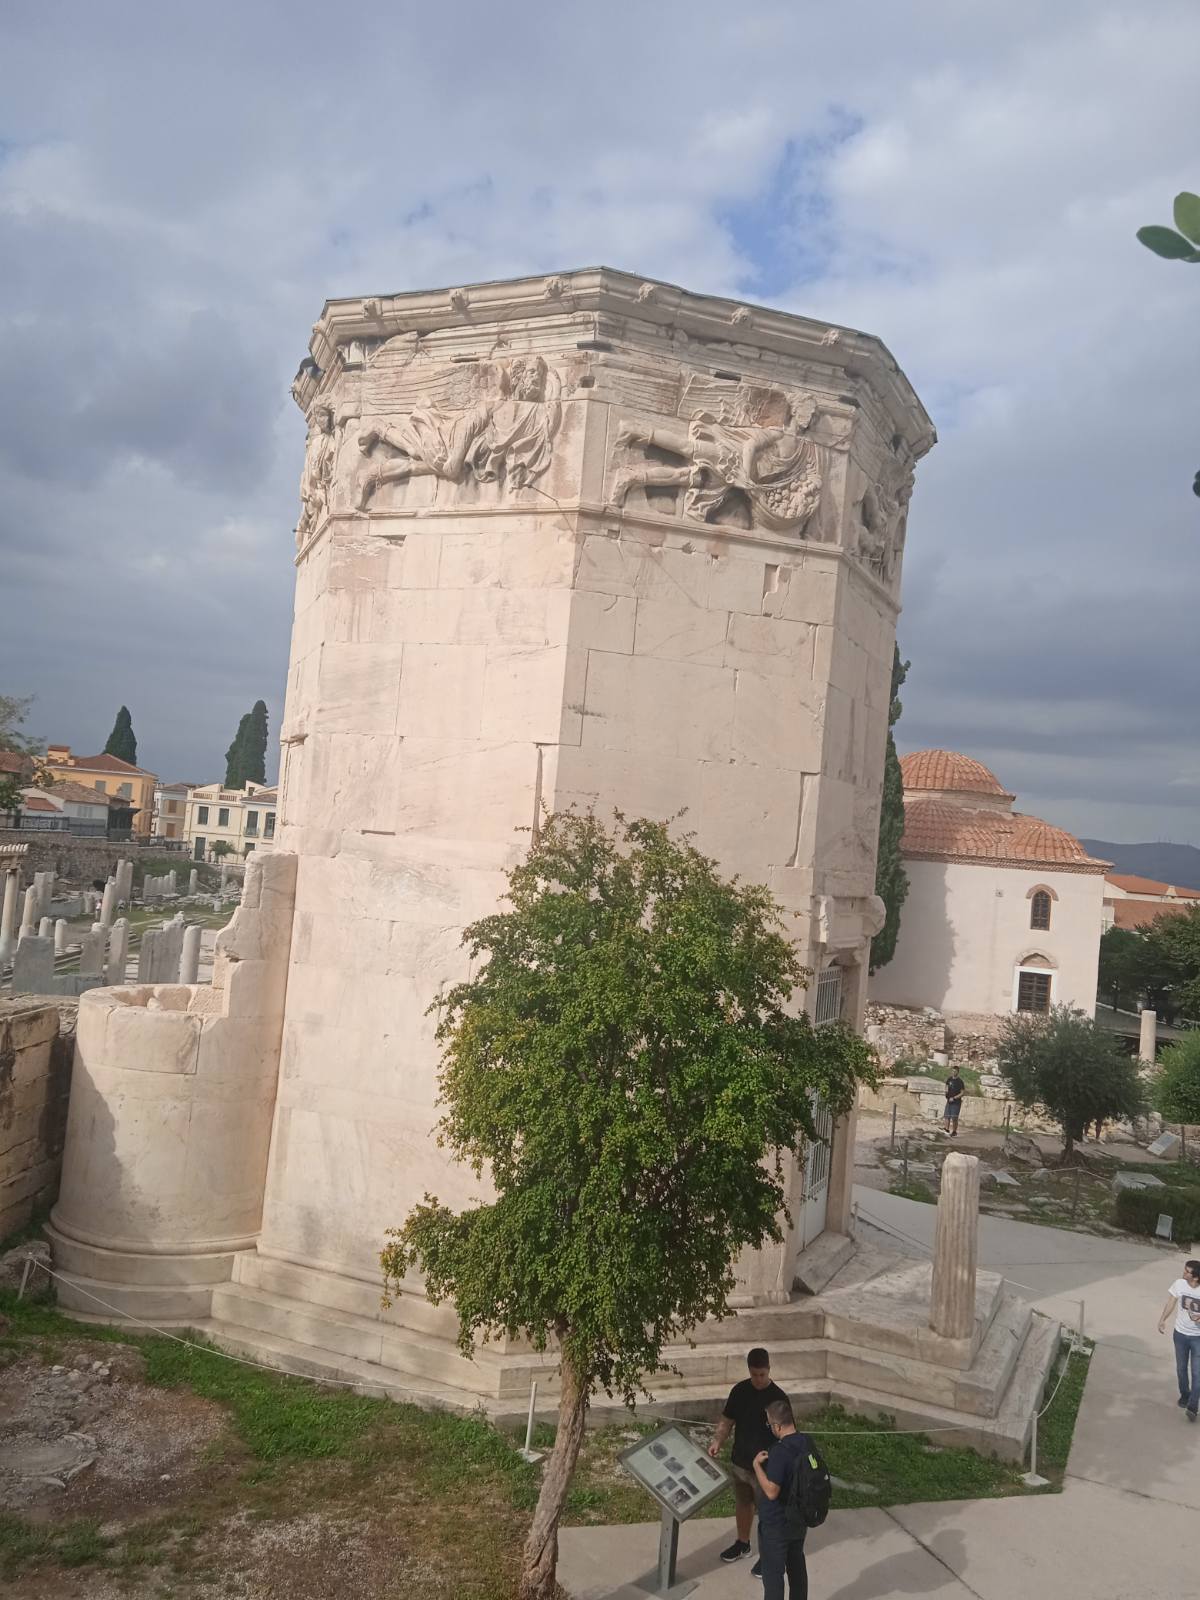  Ιστορικός περίπατος στο κέντρο της Αθήνας